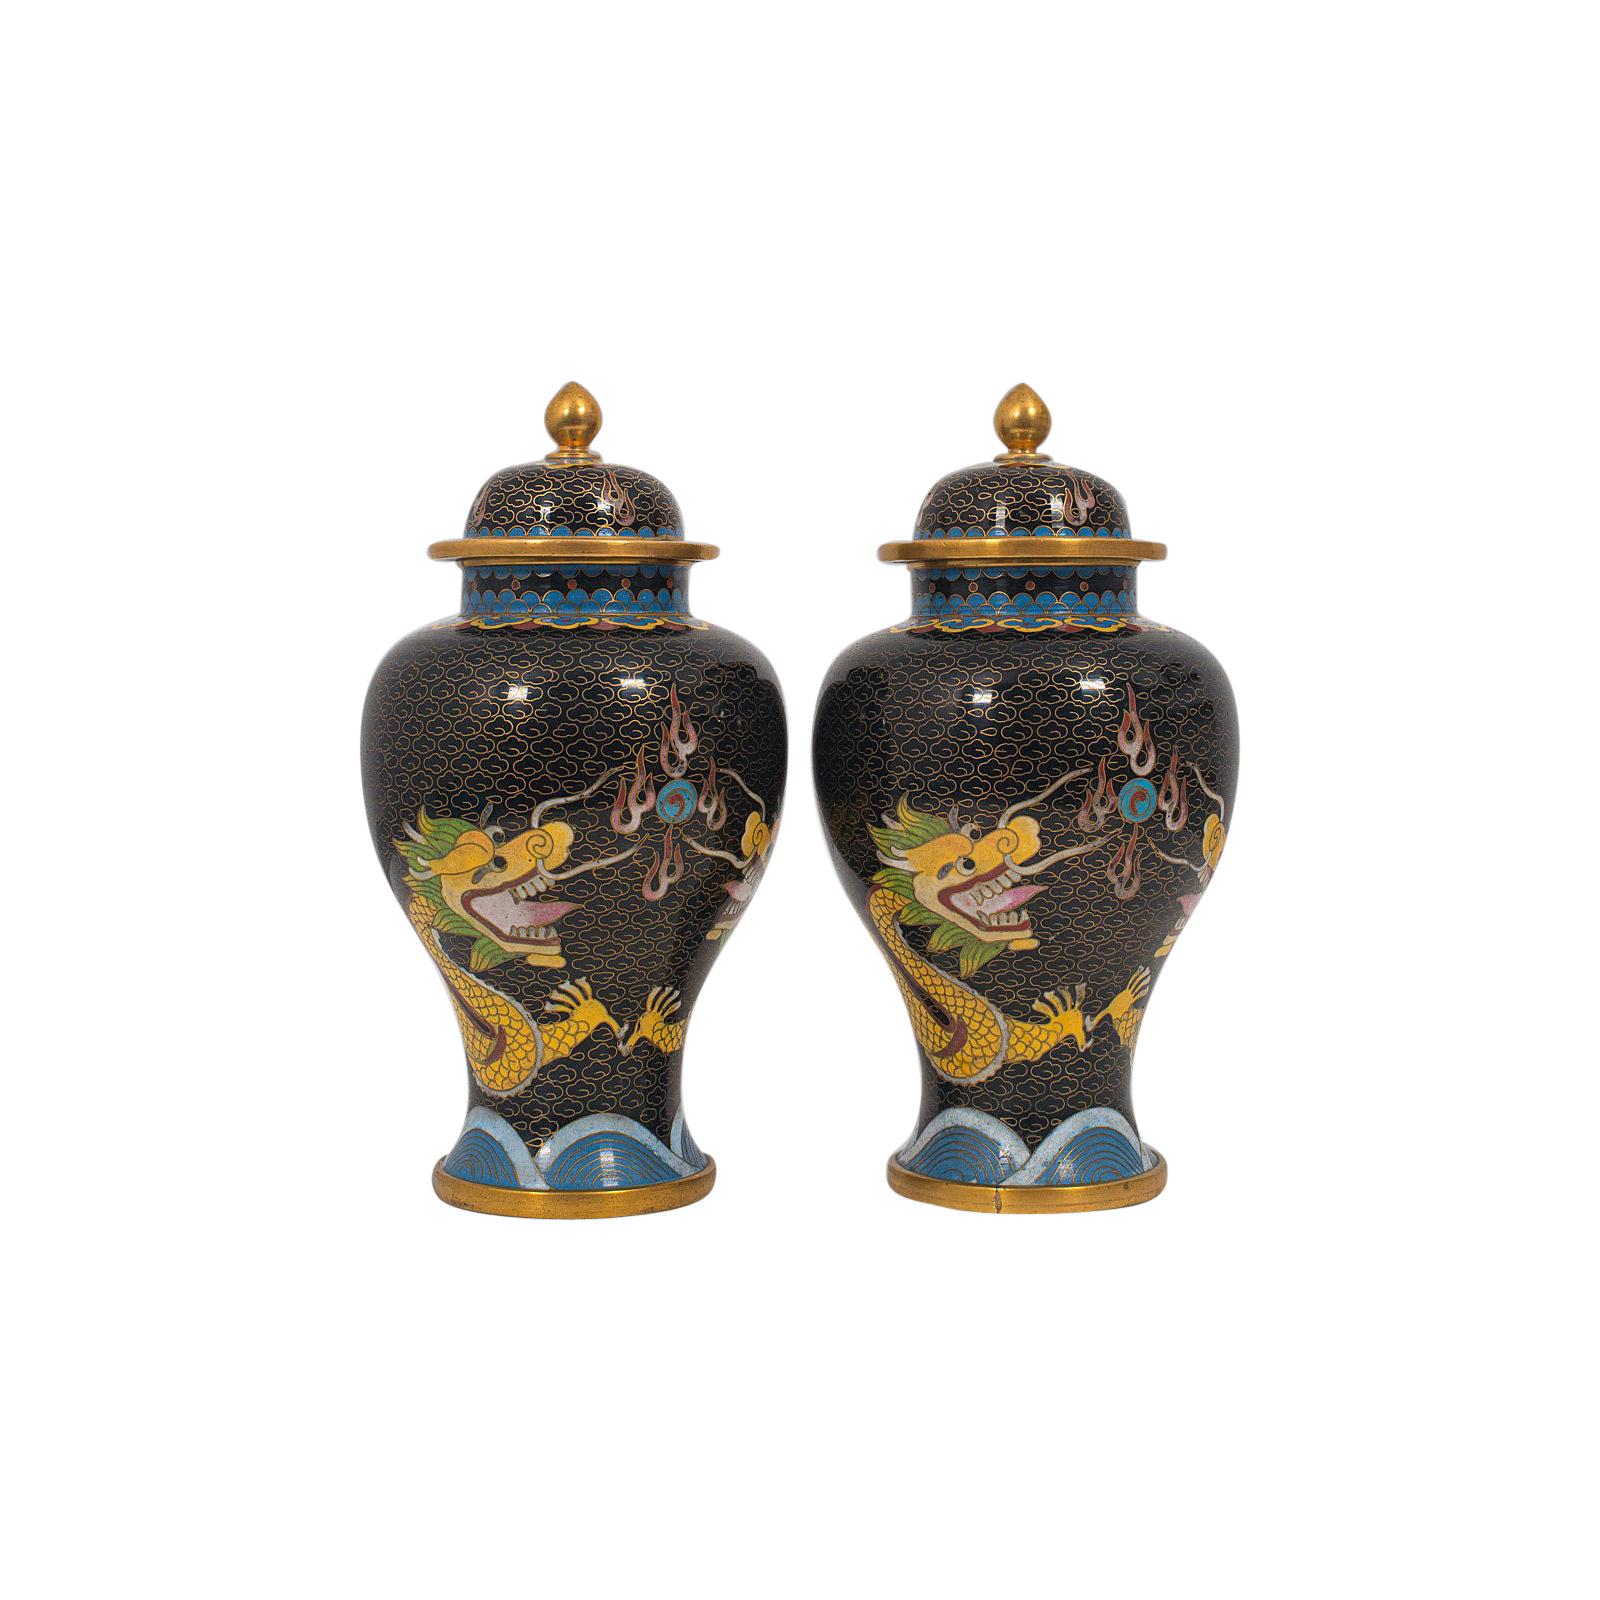 Paire de pots à épices décoratifs anciens, chinois, cloisonnés, urne à balustre vers 1900